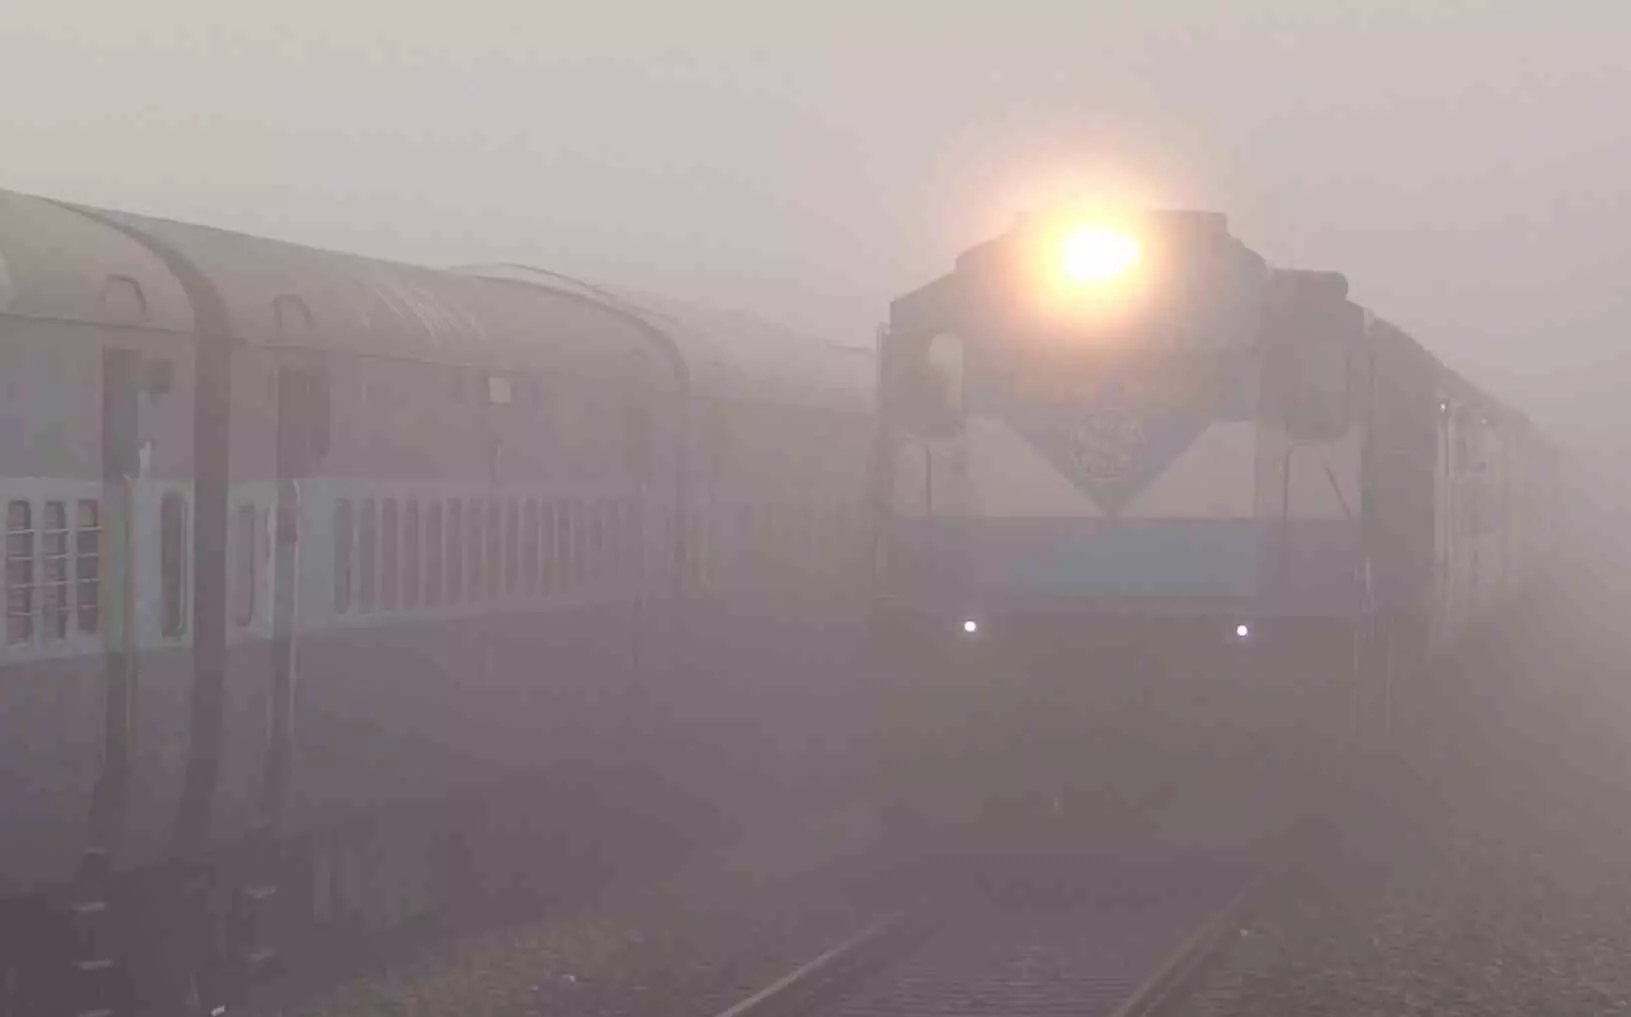 एमपी के जबलपुर में ट्रेनें छह से आठ घंटे देरी से चल रहीं, कोहरा बना वजह